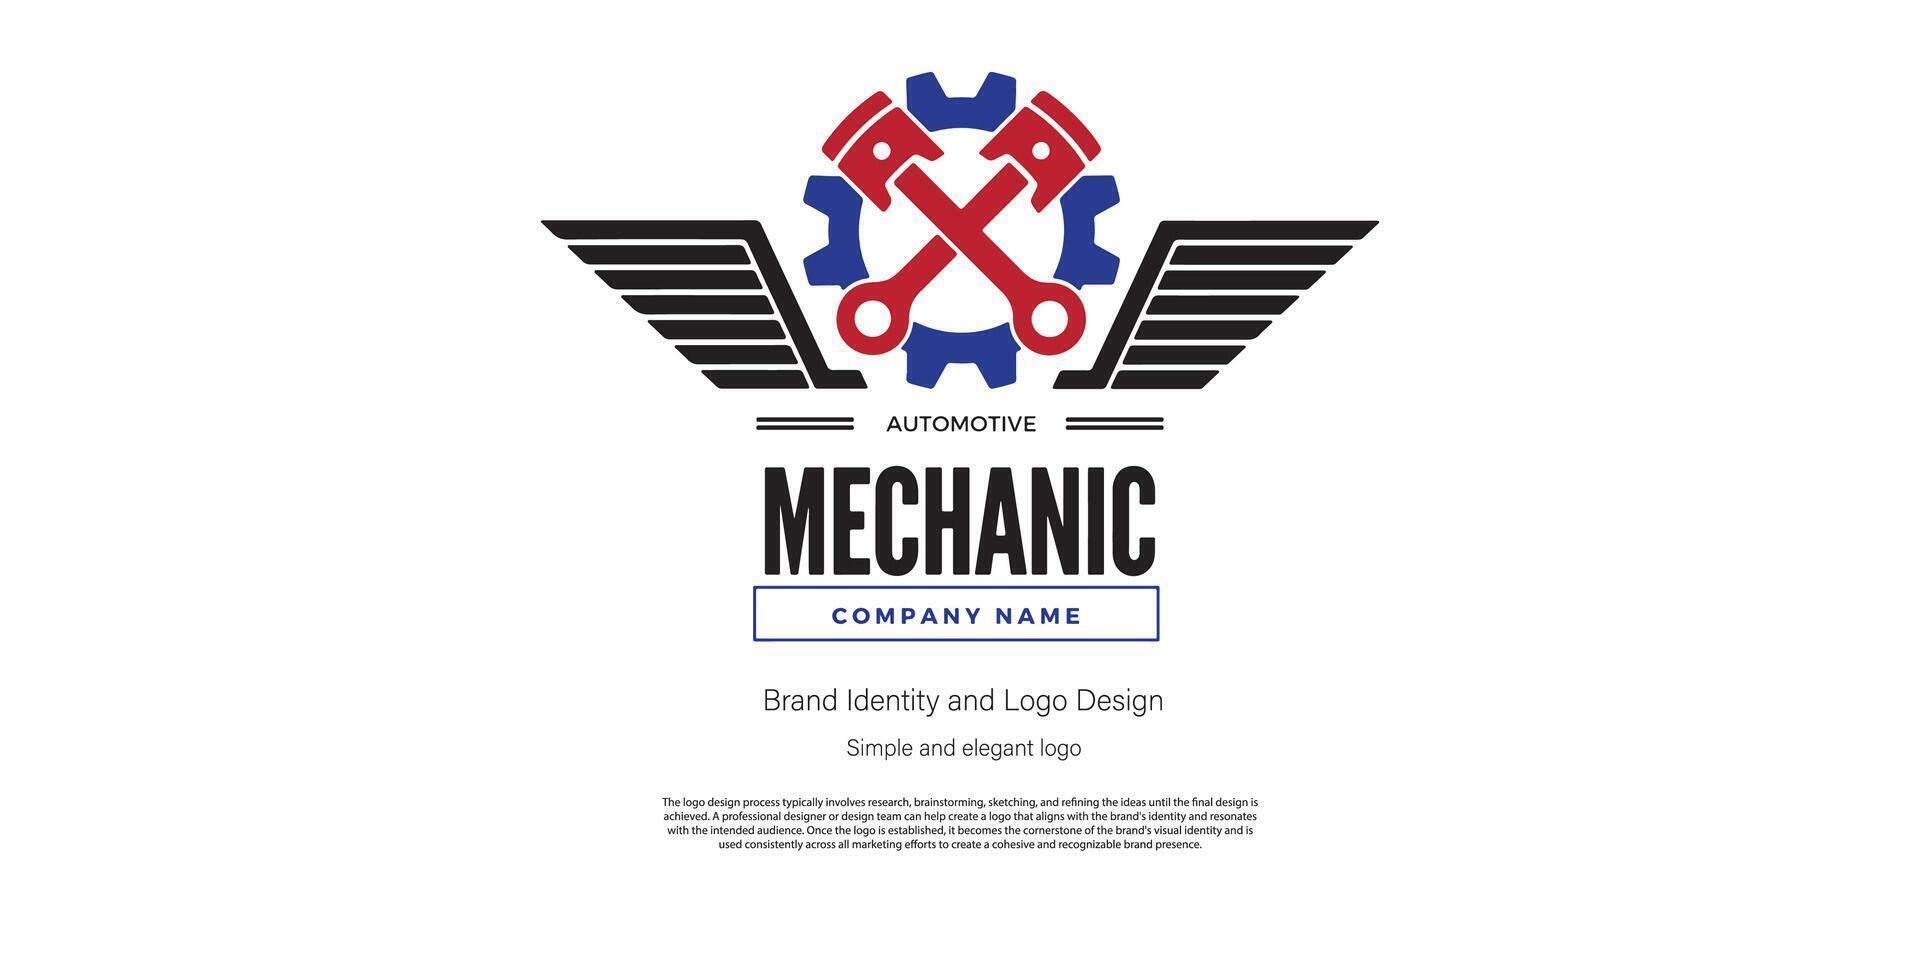 mechanisch amd Automobil Logo Design zum Logo Designer oder Netz Entwickler vektor